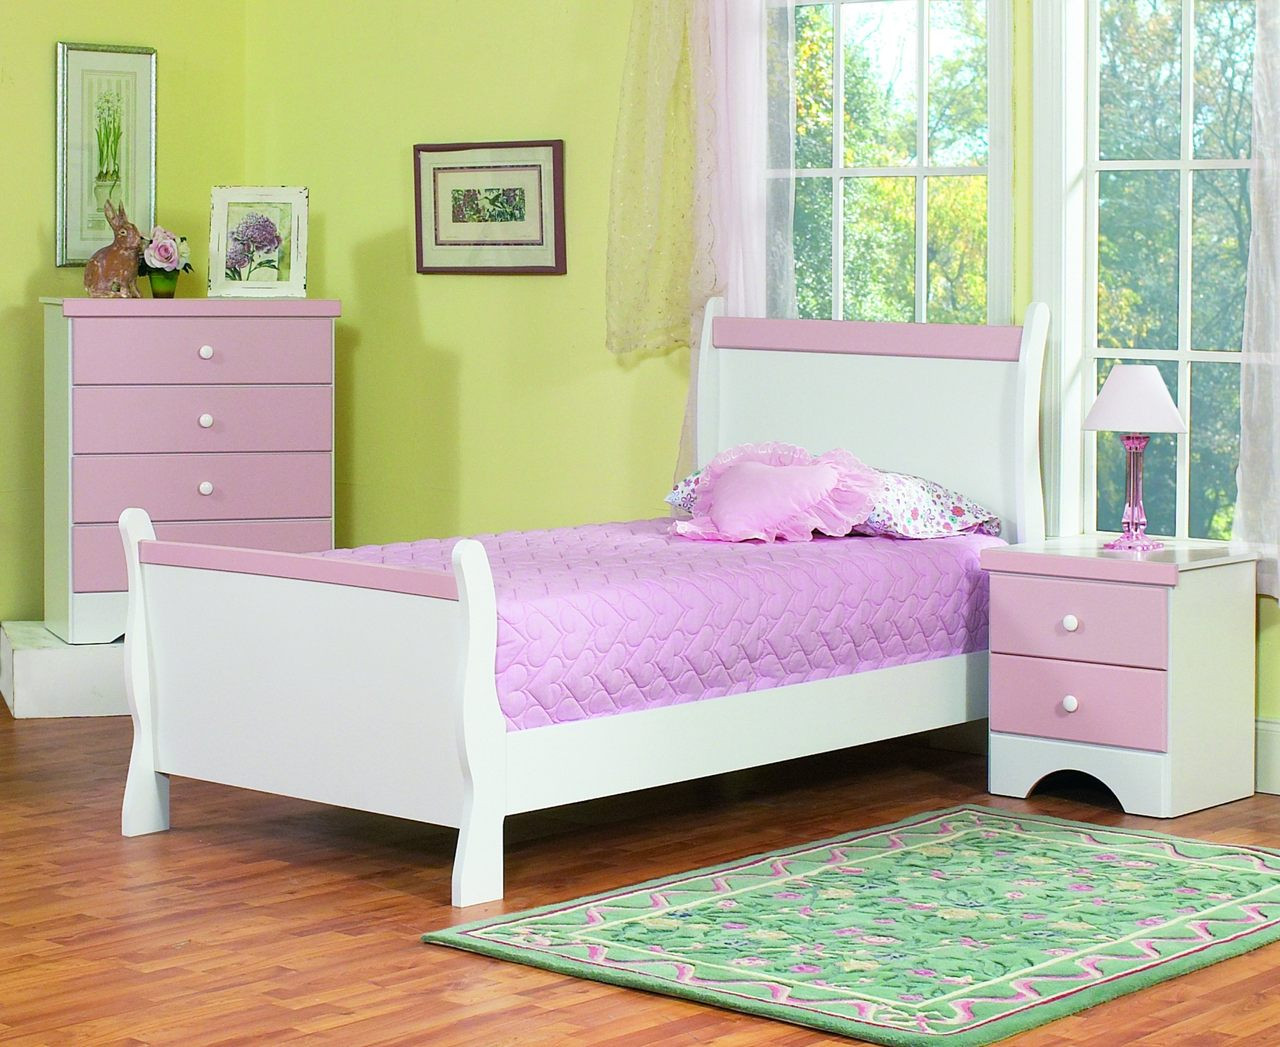 Kids Bedroom Dresser
 The Captivating Kids Bedroom Furniture Amaza Design